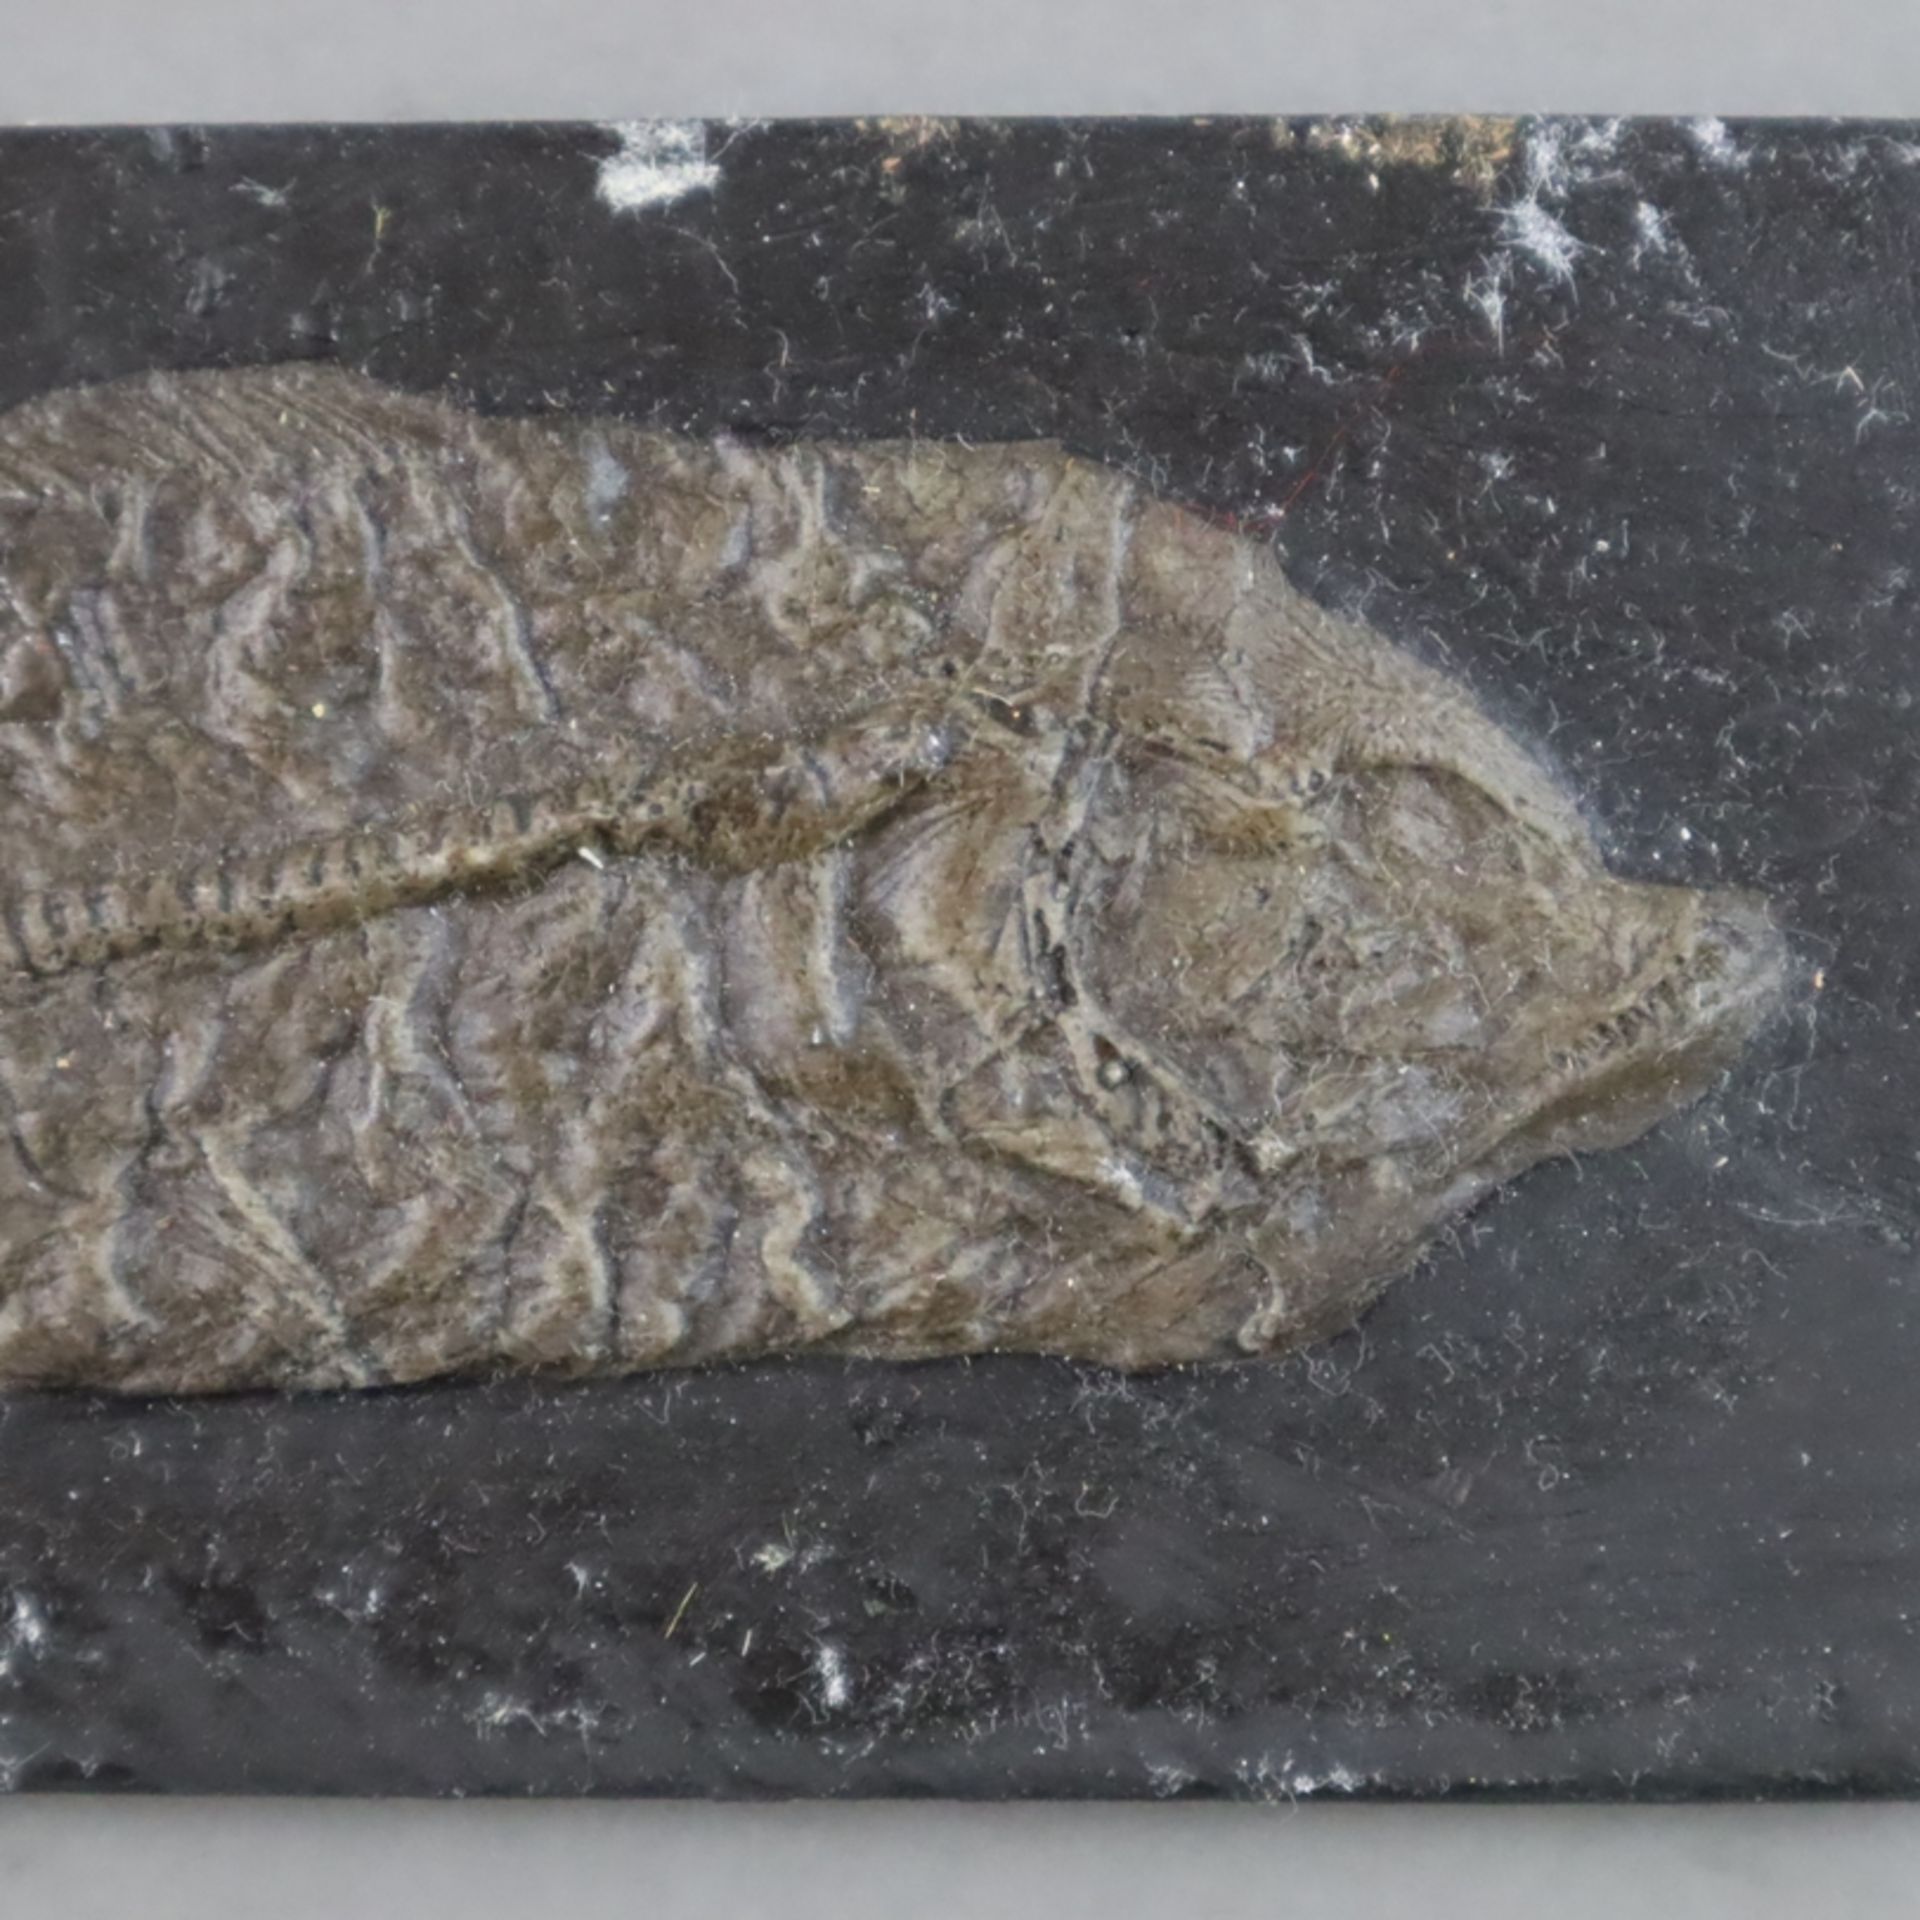 Drei Fossilien - 2x Amia Kehreri (Kahlhecht), L.ca. 13,2cm und 22cm, 1x Tropisches Blatt, L.ca.11,2 - Bild 4 aus 5